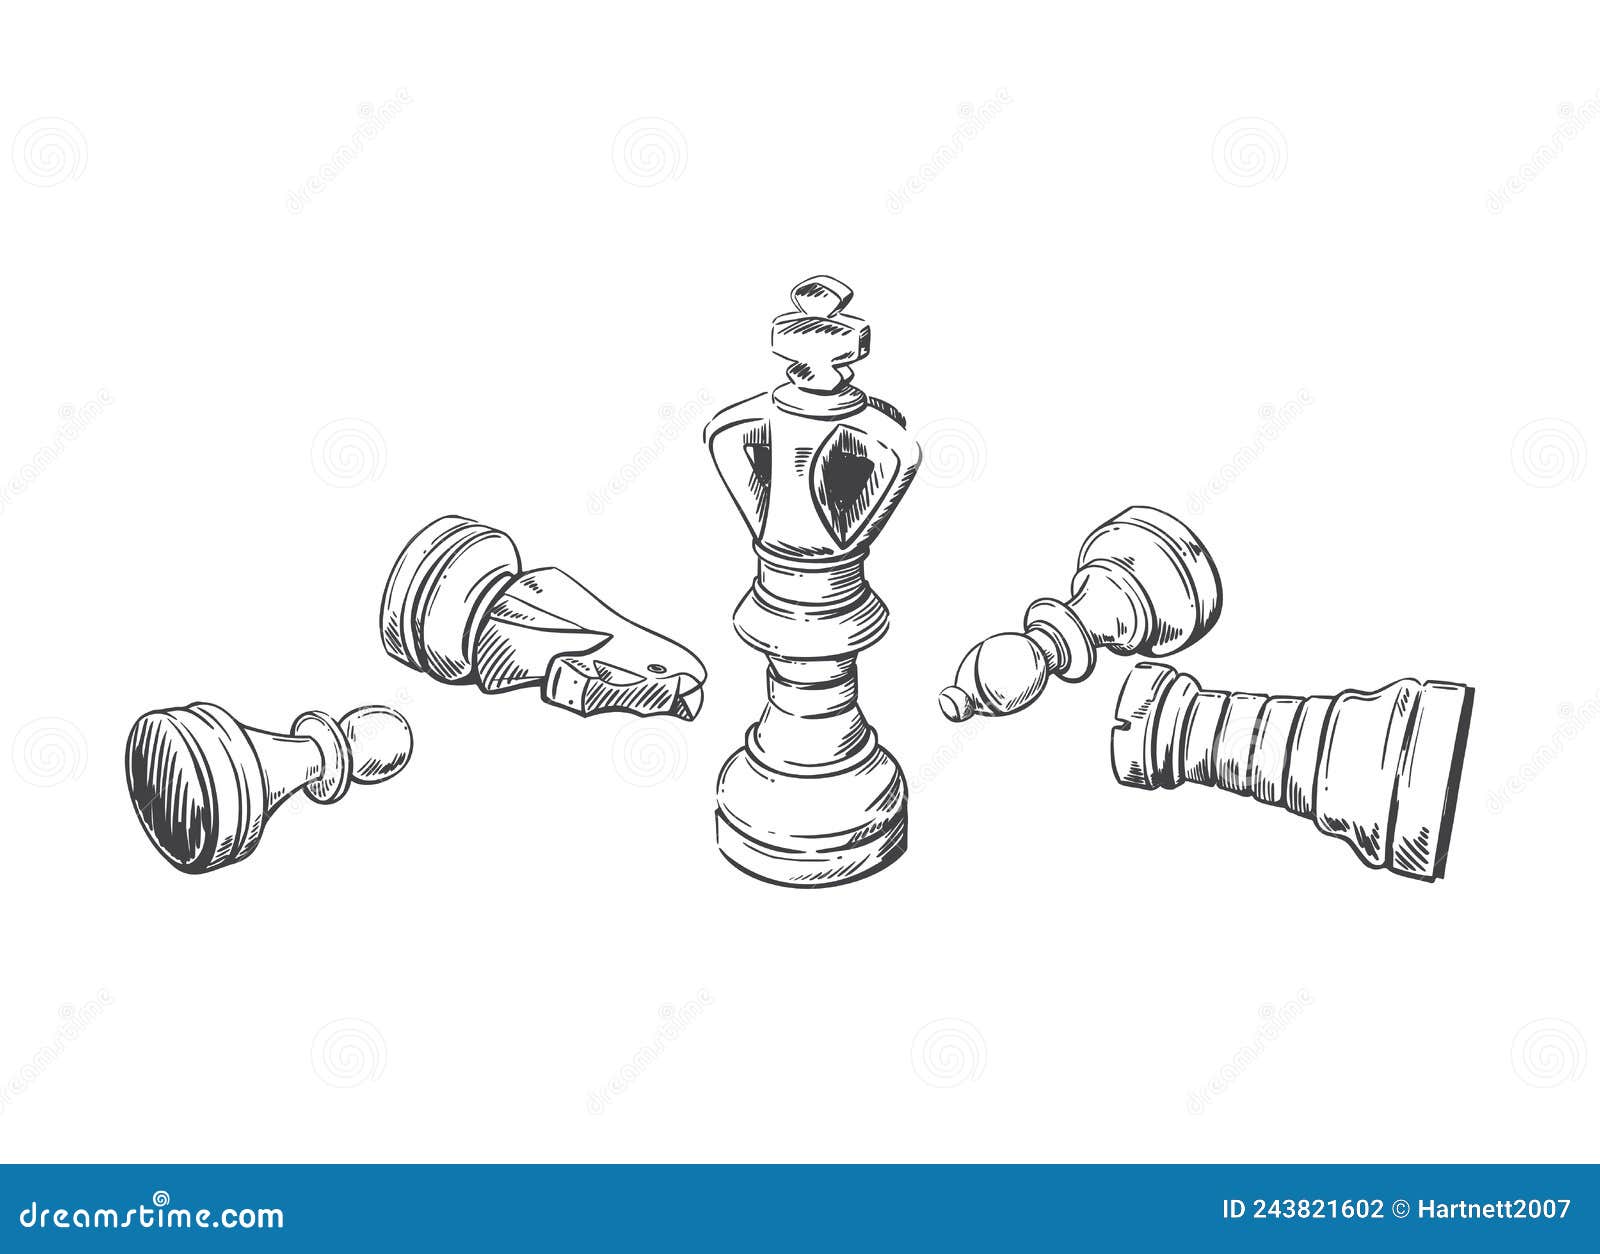 Peças de xadrez em estilo de desenho ilustração vetorial desenhada